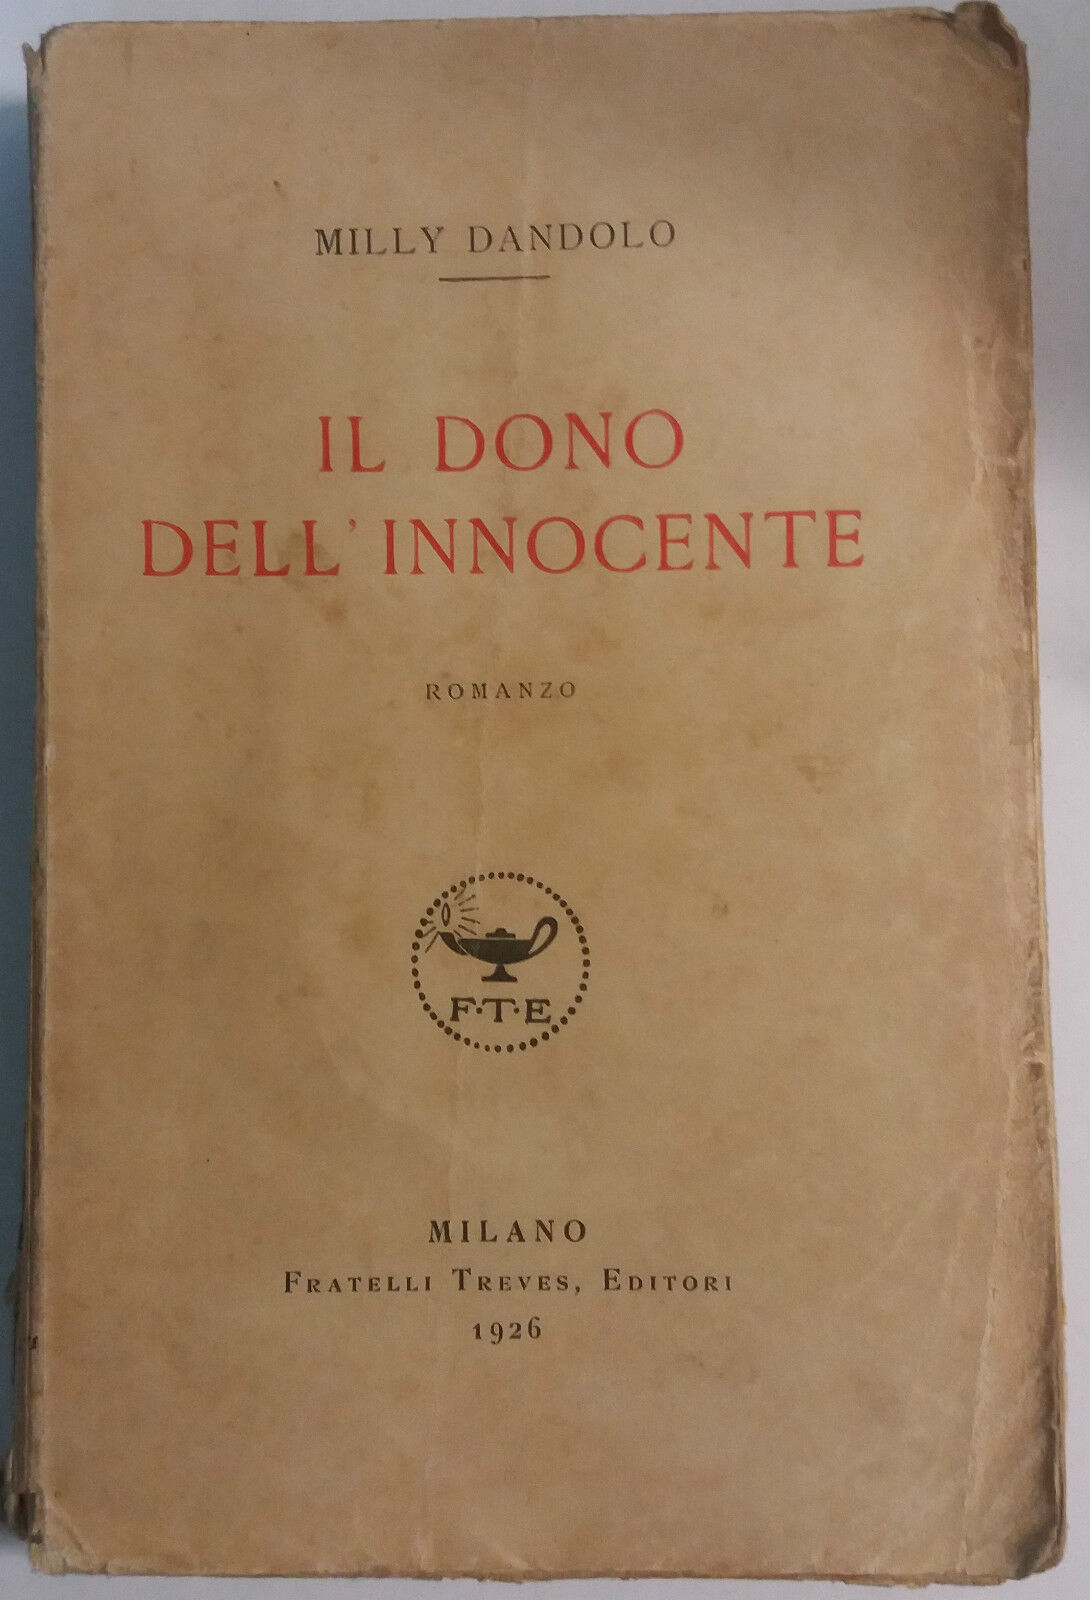 Il dono dell'innocente - Milly Dandolo - Treves Editori - 1926 - G